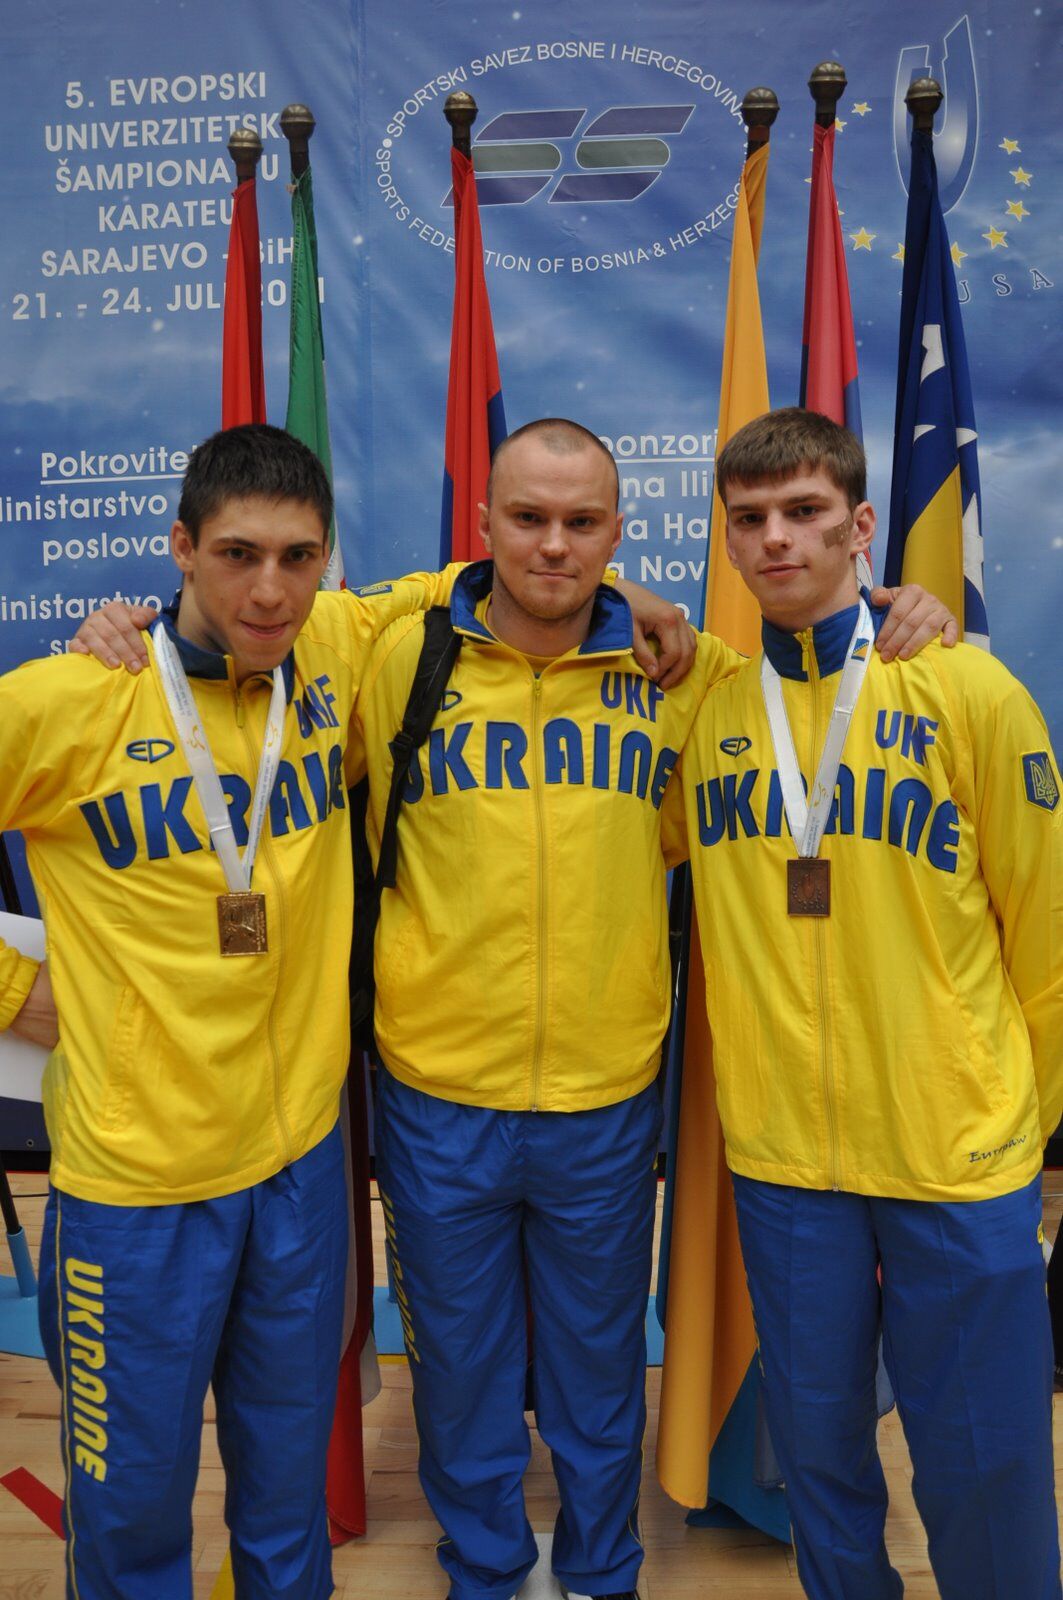 Каратэ: золотой старт Украины в Европе